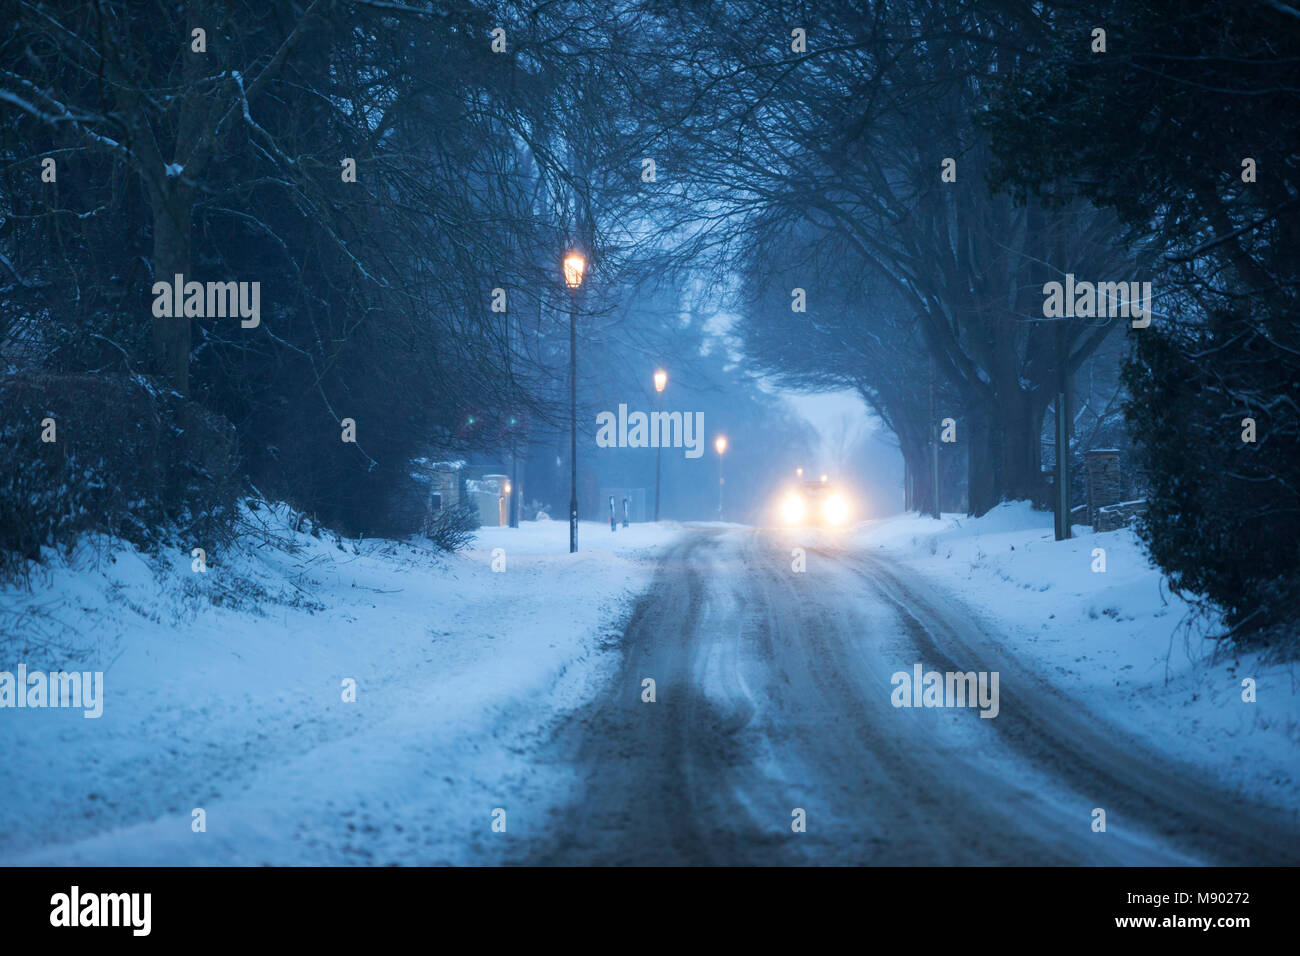 Route couverte de neige au crépuscule, Chipping Campden, les Cotswolds, Gloucestershire, Angleterre, Royaume-Uni, Europe Banque D'Images